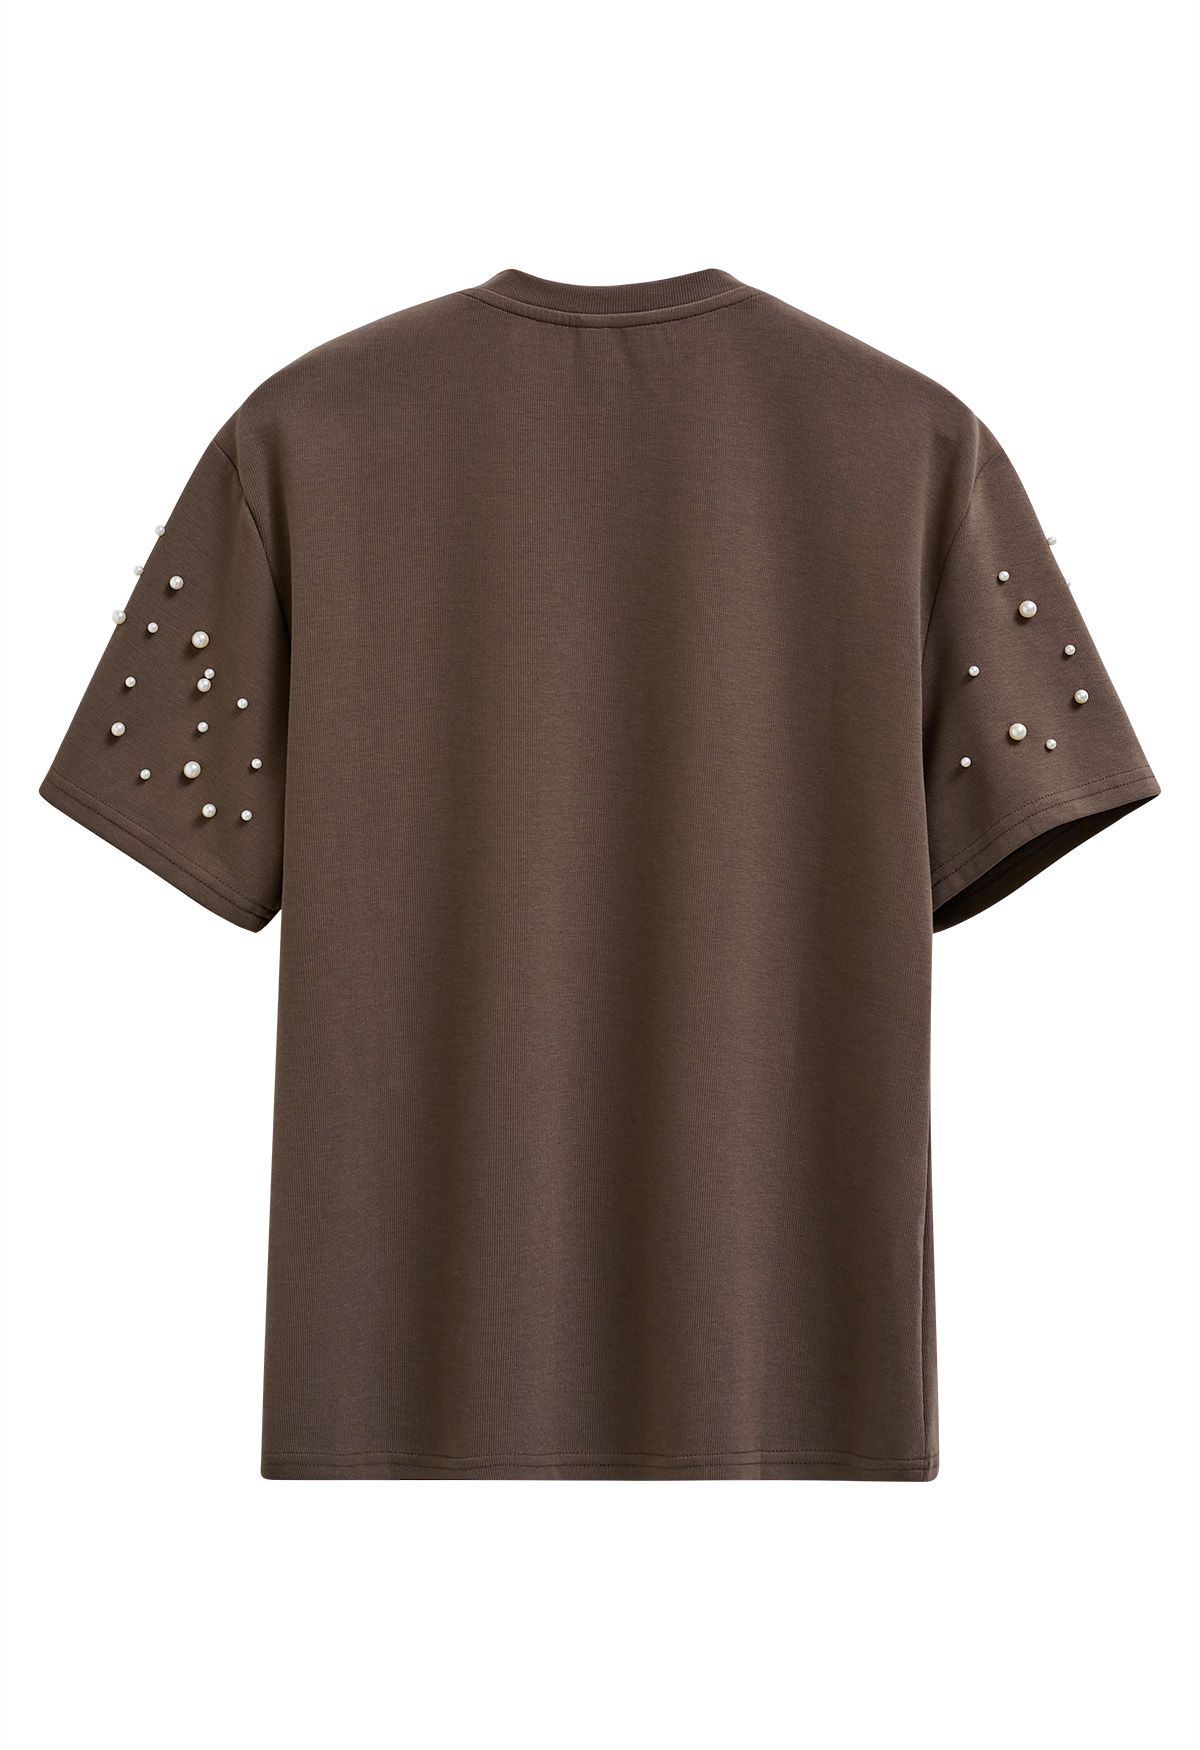 T-shirt sophistiqué à bordure perlée en marron